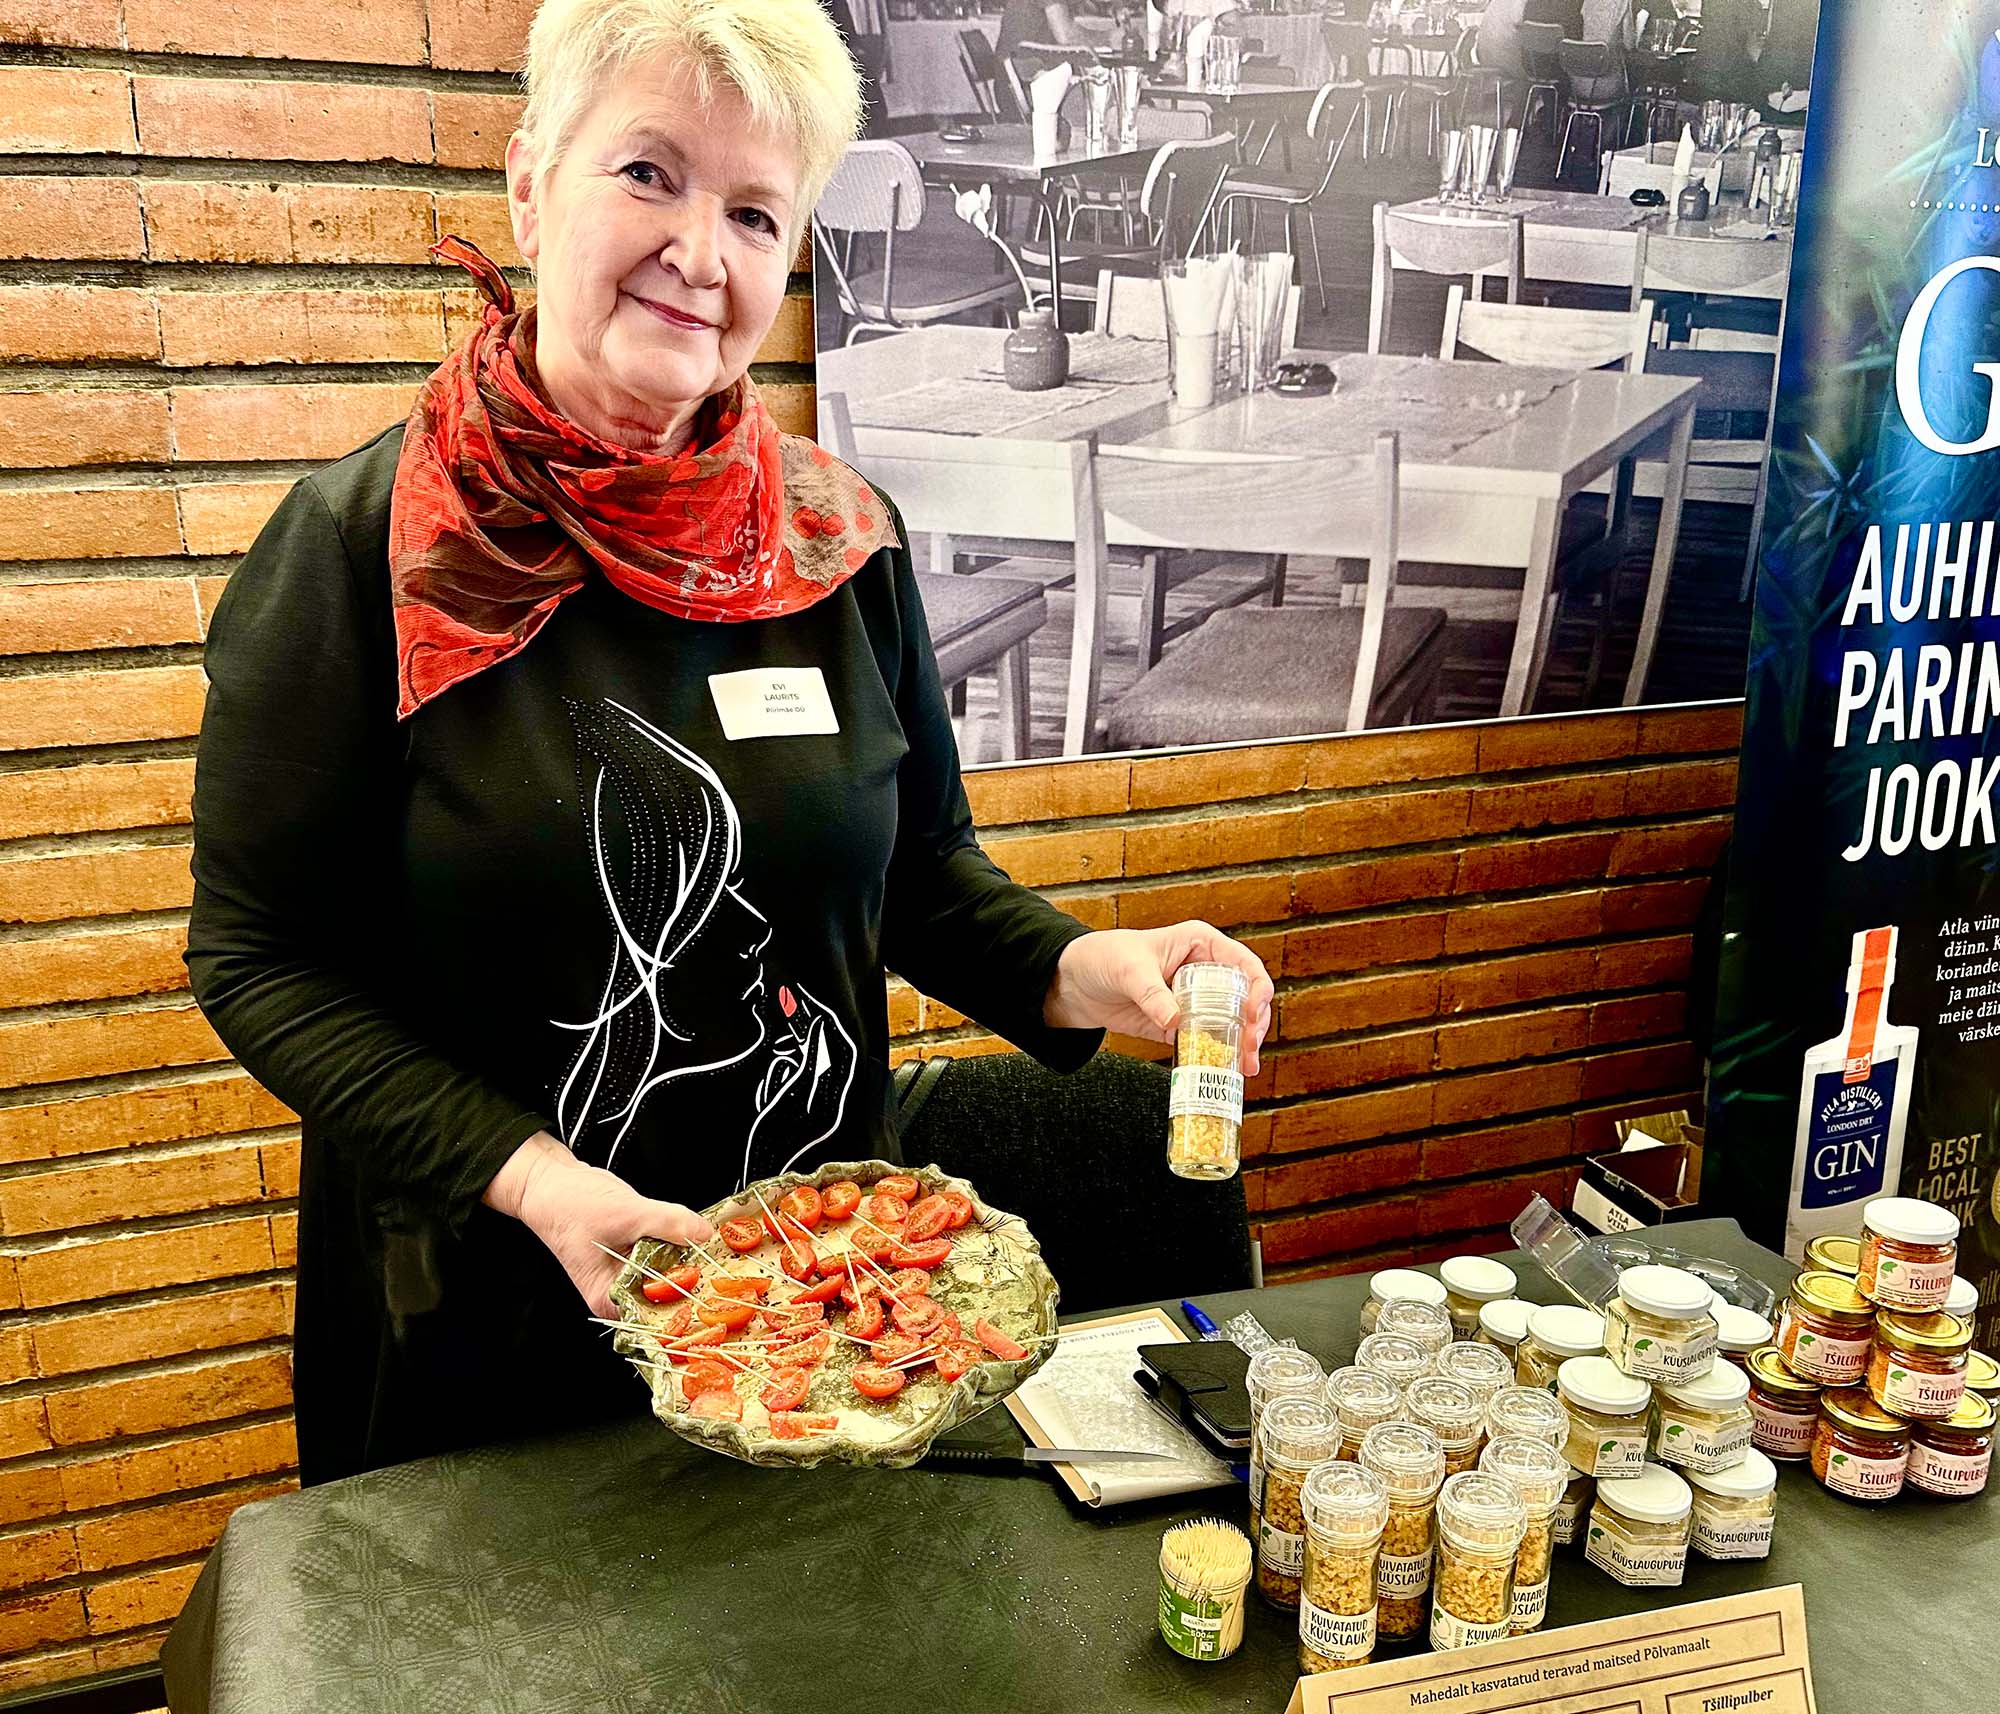 Möödunud aastal toimunud SÜDI’l võis nautida Evi Lauritsa (OÜ Piirimäe, Kanepi vald) mahedalt kasvatatud teravaid maitseid. Tunnustust on pälvinud kuivatatud küüslauk. Foto: KALEV ANNOM